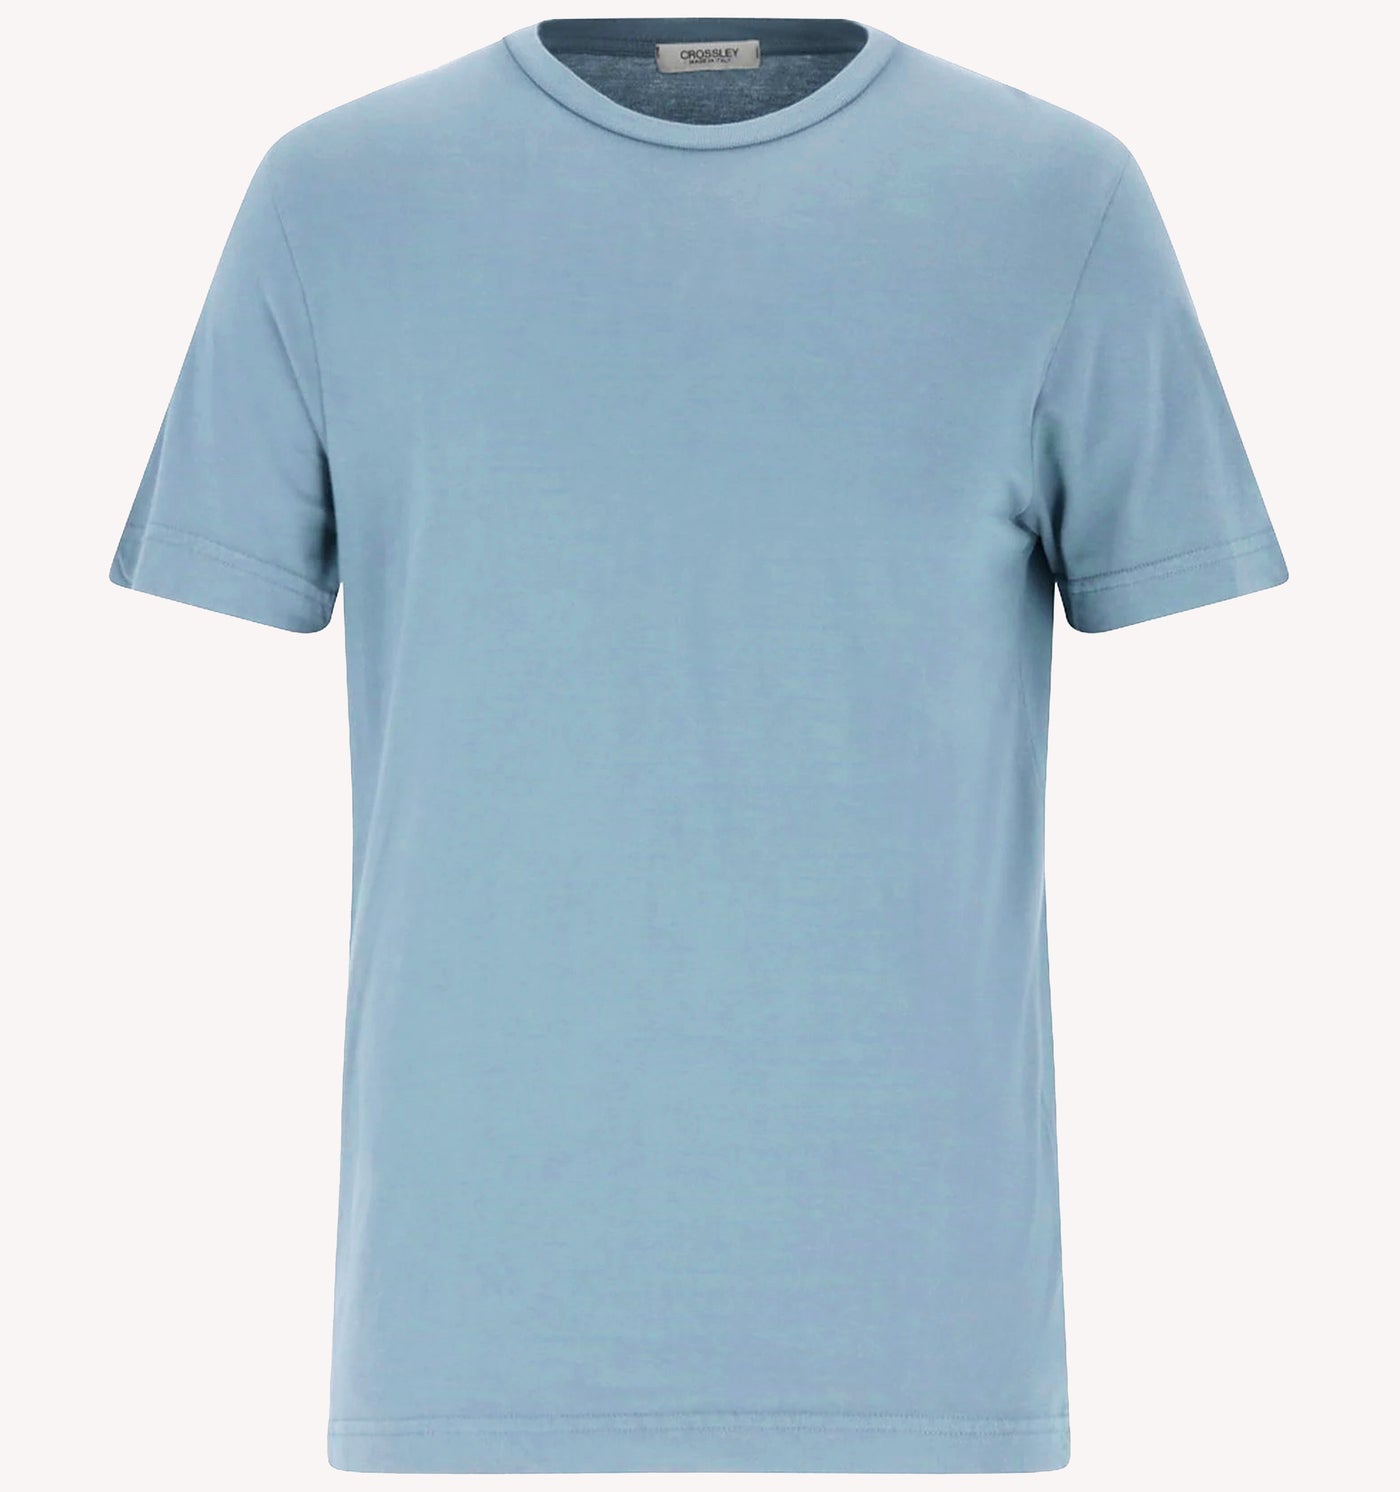 Crossley T-Shirt in Blue Dusk